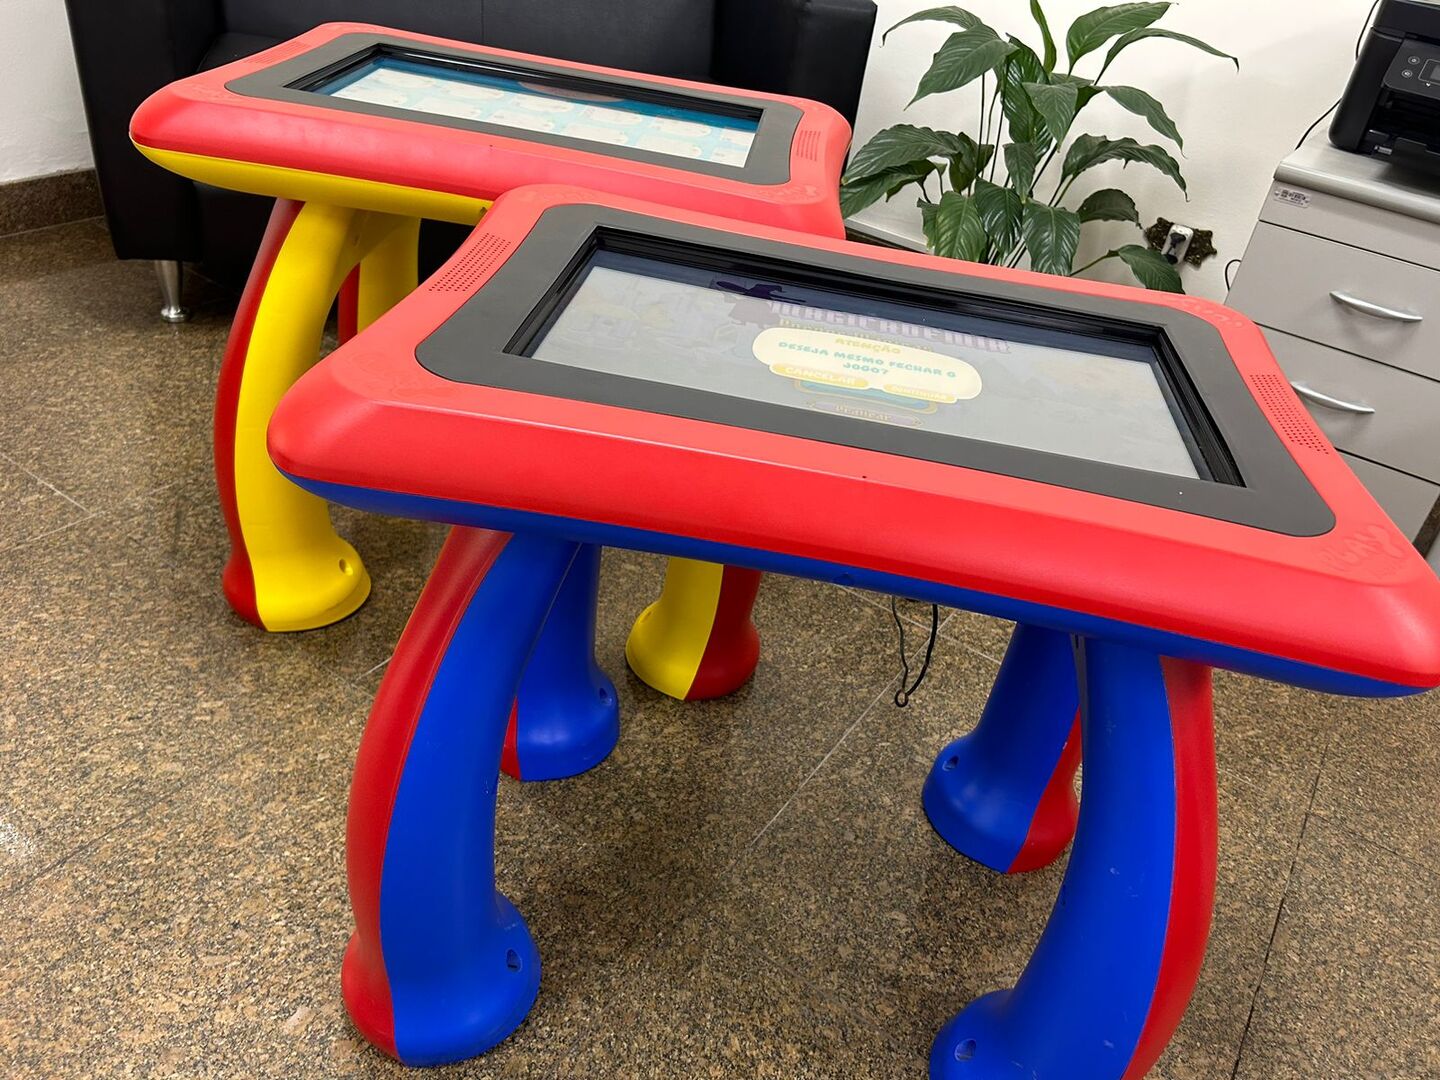 Poá programa entrega de tablets e mesas interativas nas escolas - Diário de Suzano